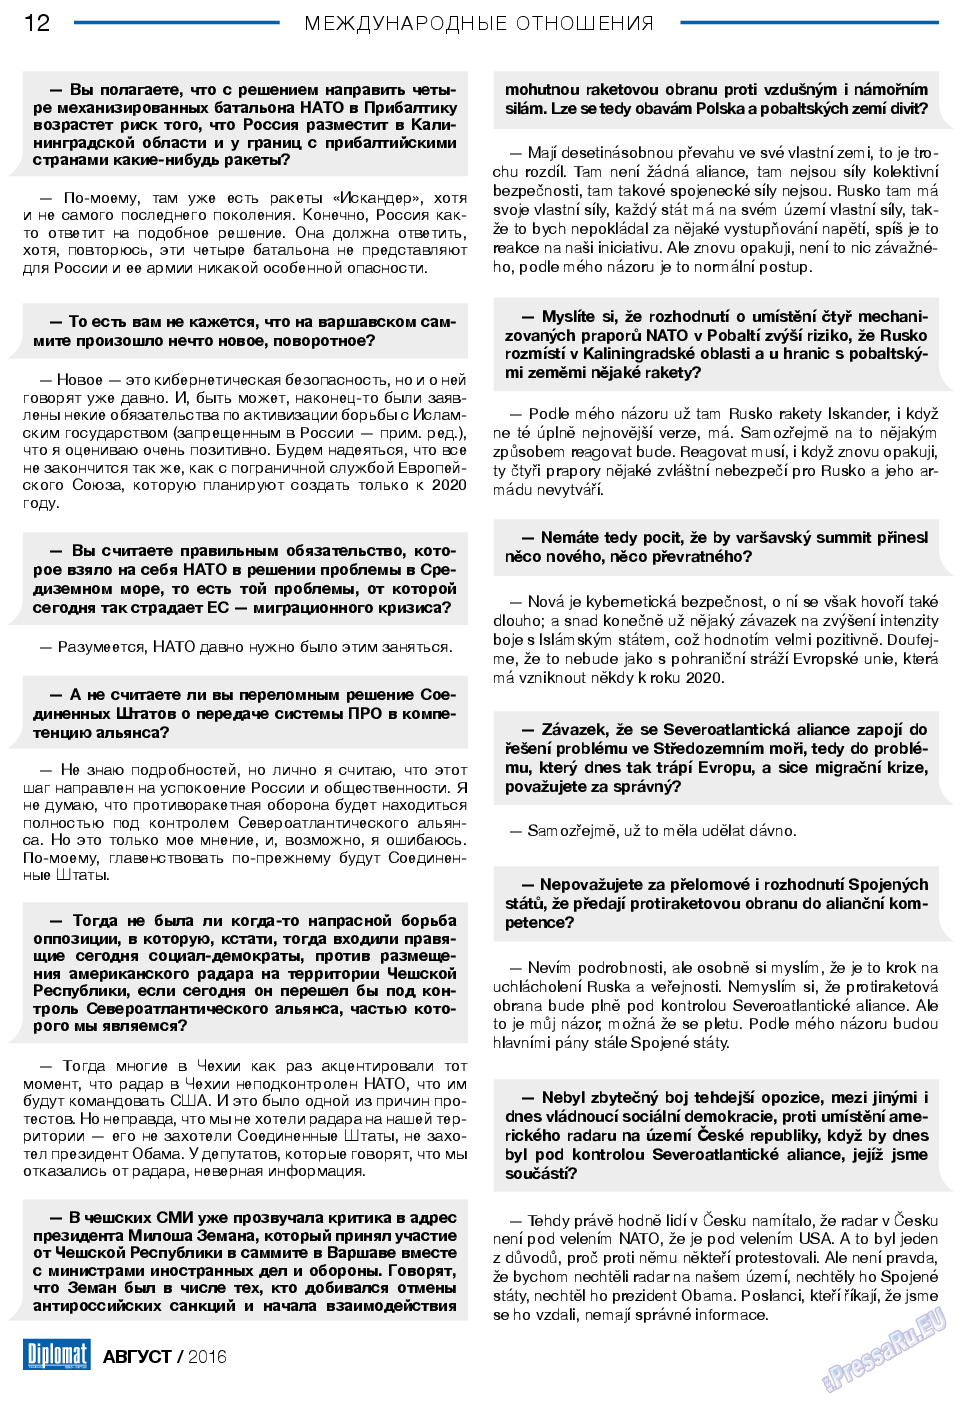 Diplomat, газета. 2016 №83 стр.12